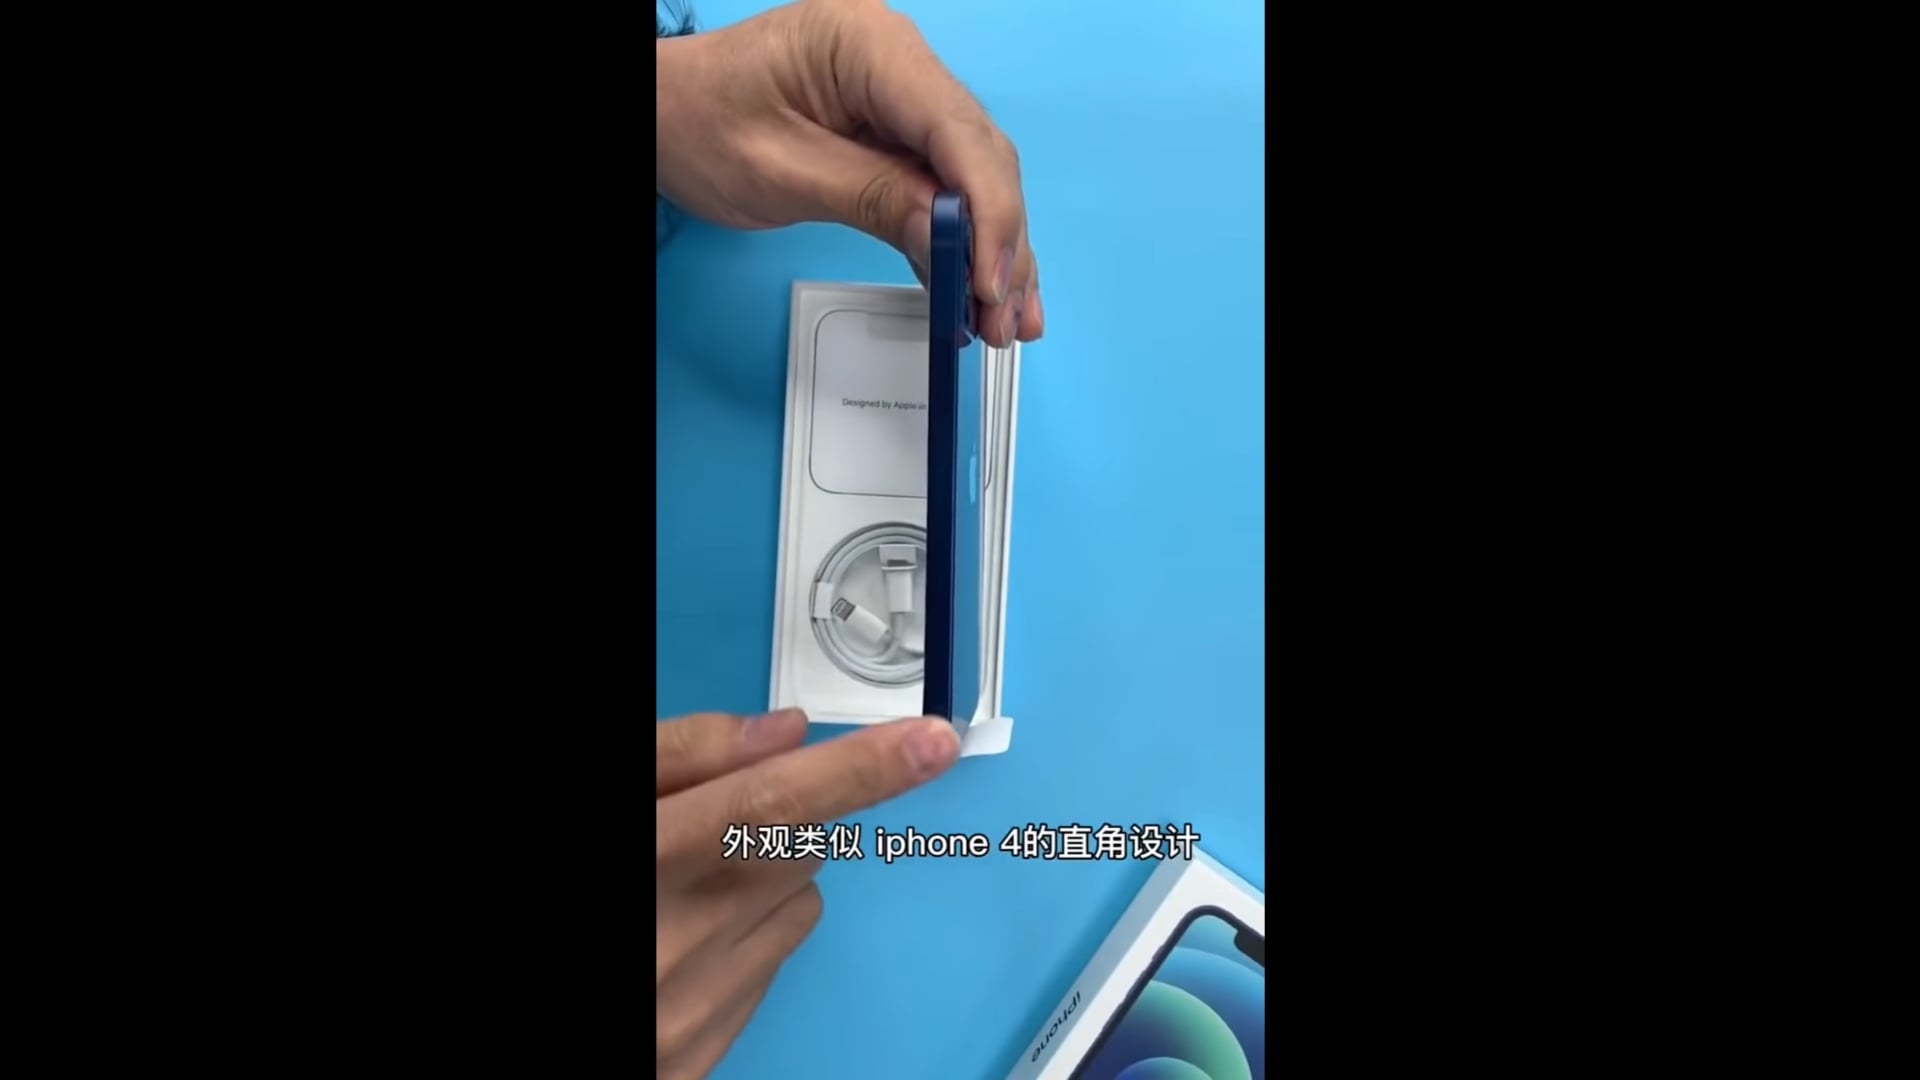 Video tháo tung iPhone 12 đầu tiên xuất hiện cho thấy cách Apple làm thiết bị mỏng hơn và nhẹ hơn